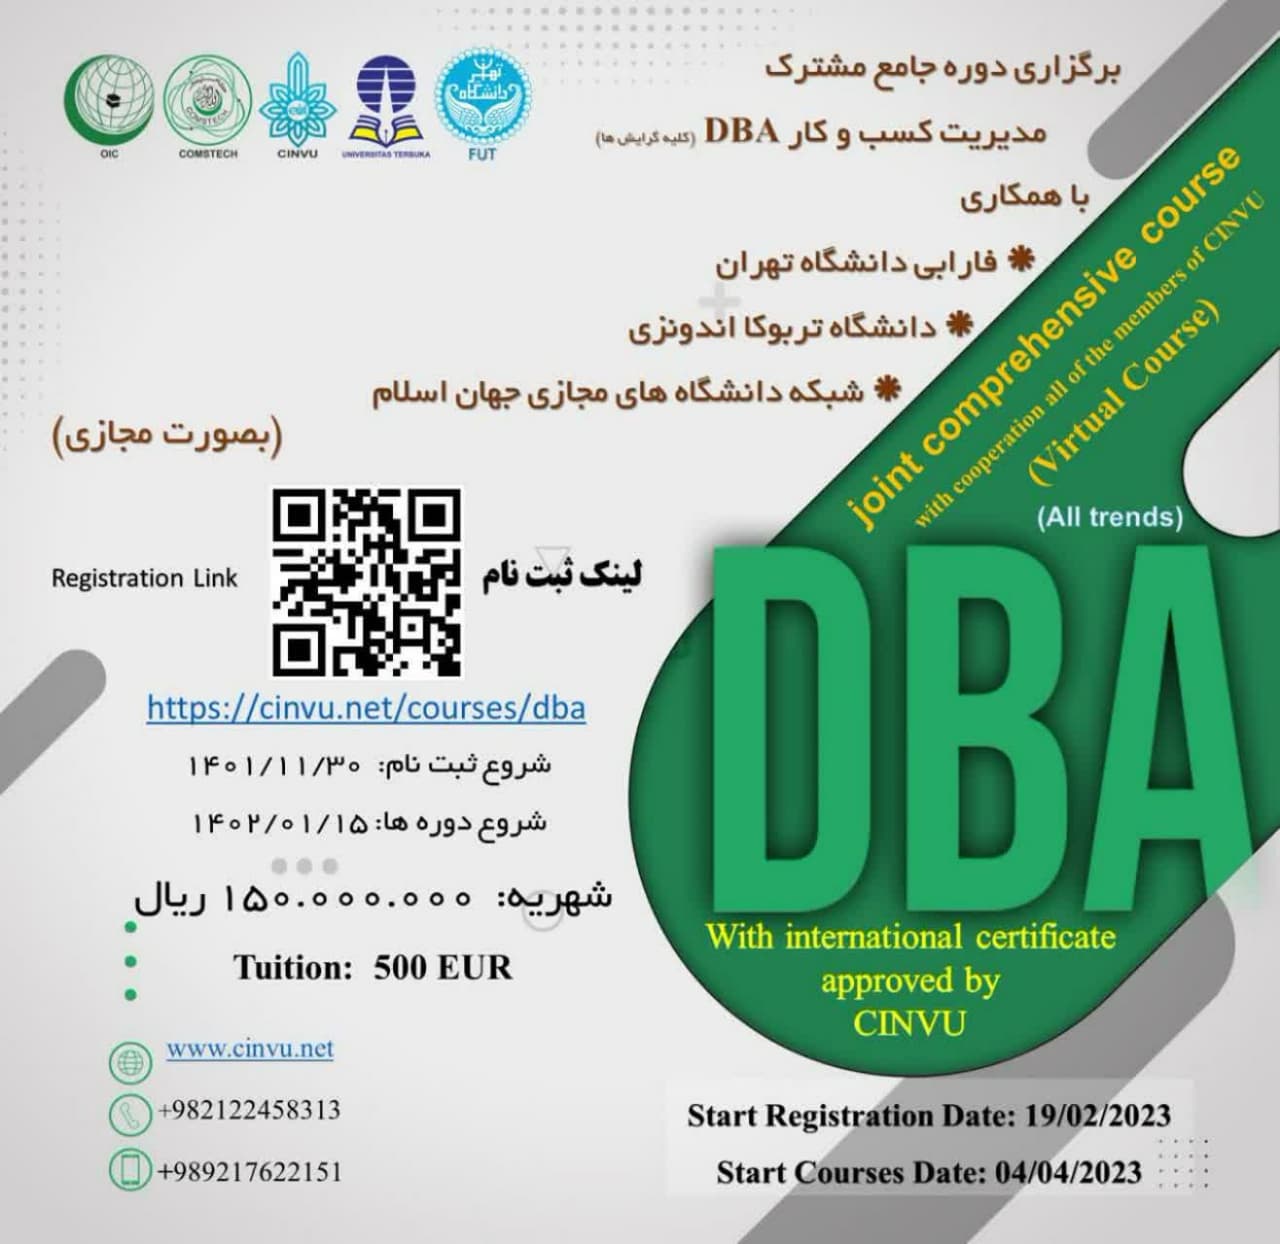 The DBA Course